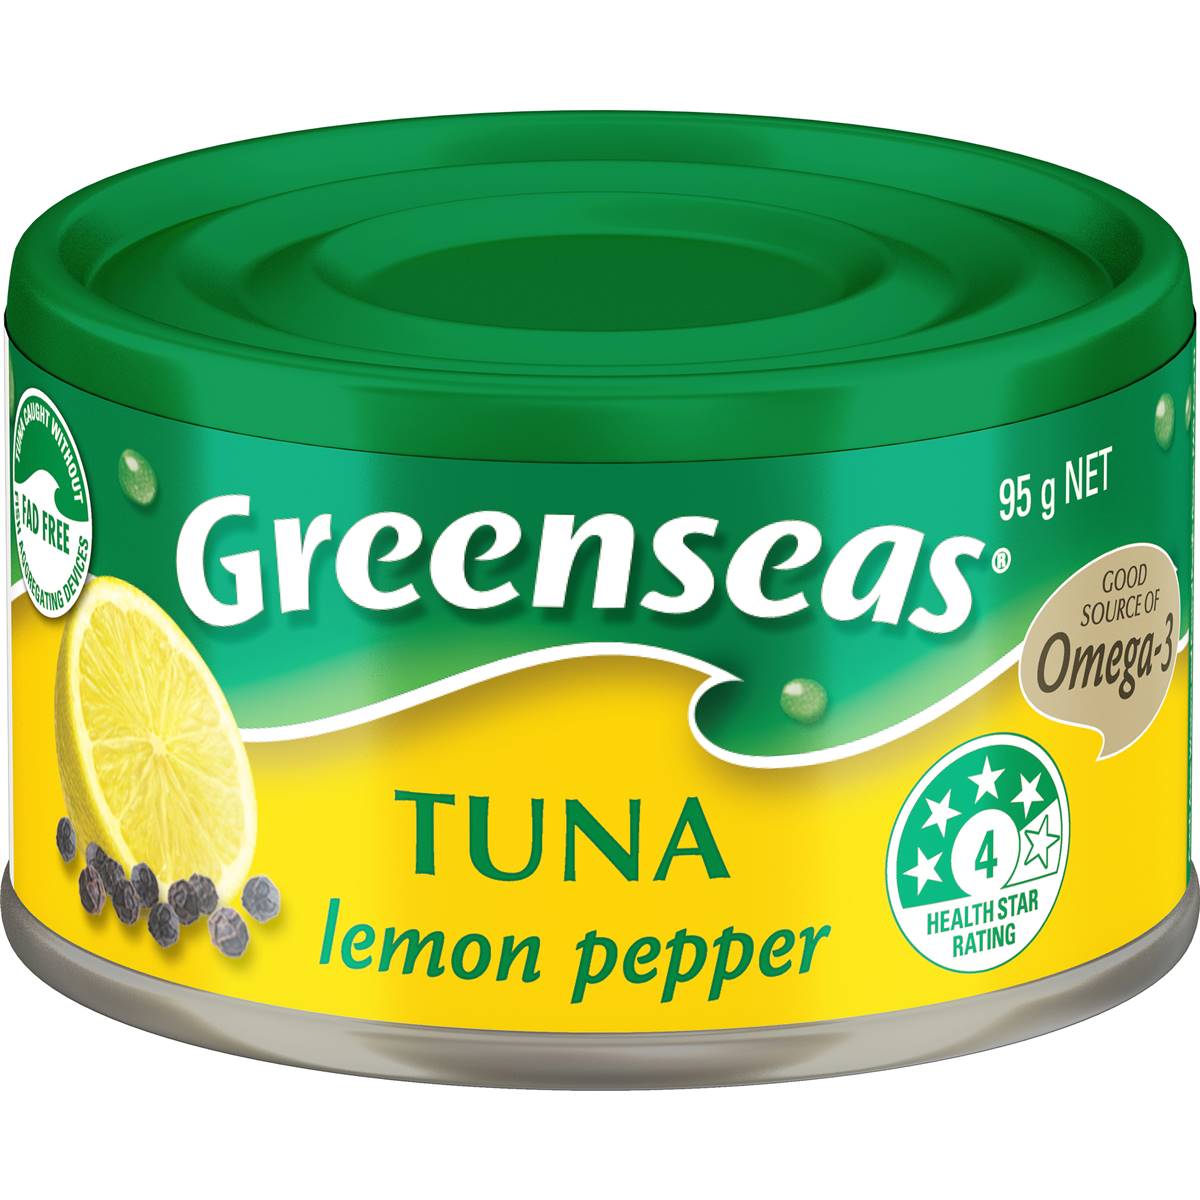 Calories in Greenseas Tuna Lemon Pepper Lemon Pepper